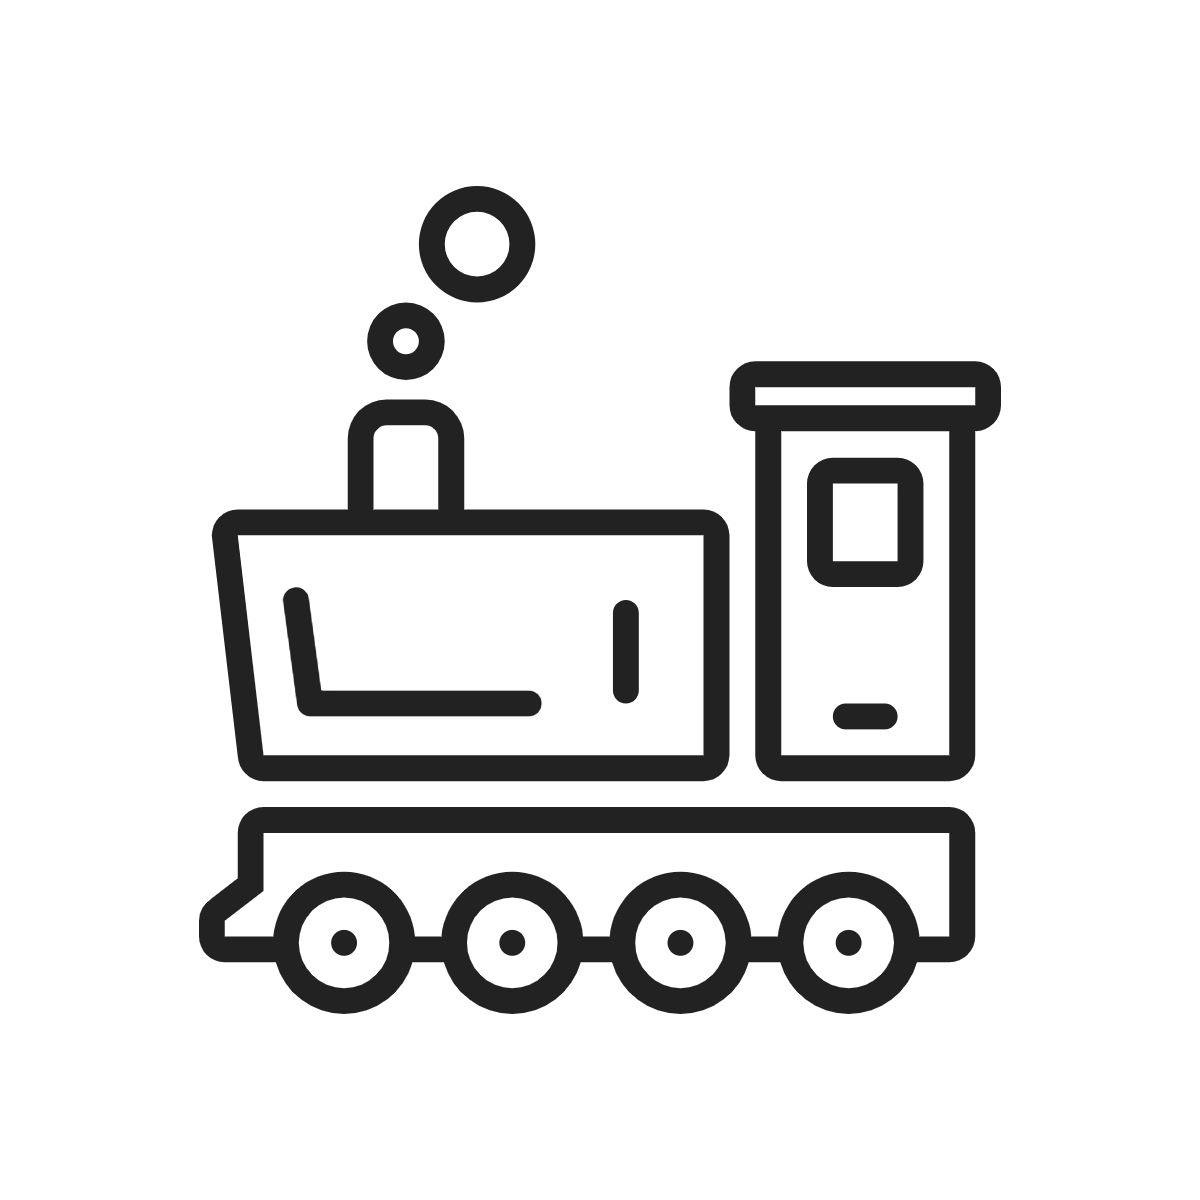 Steam train icon